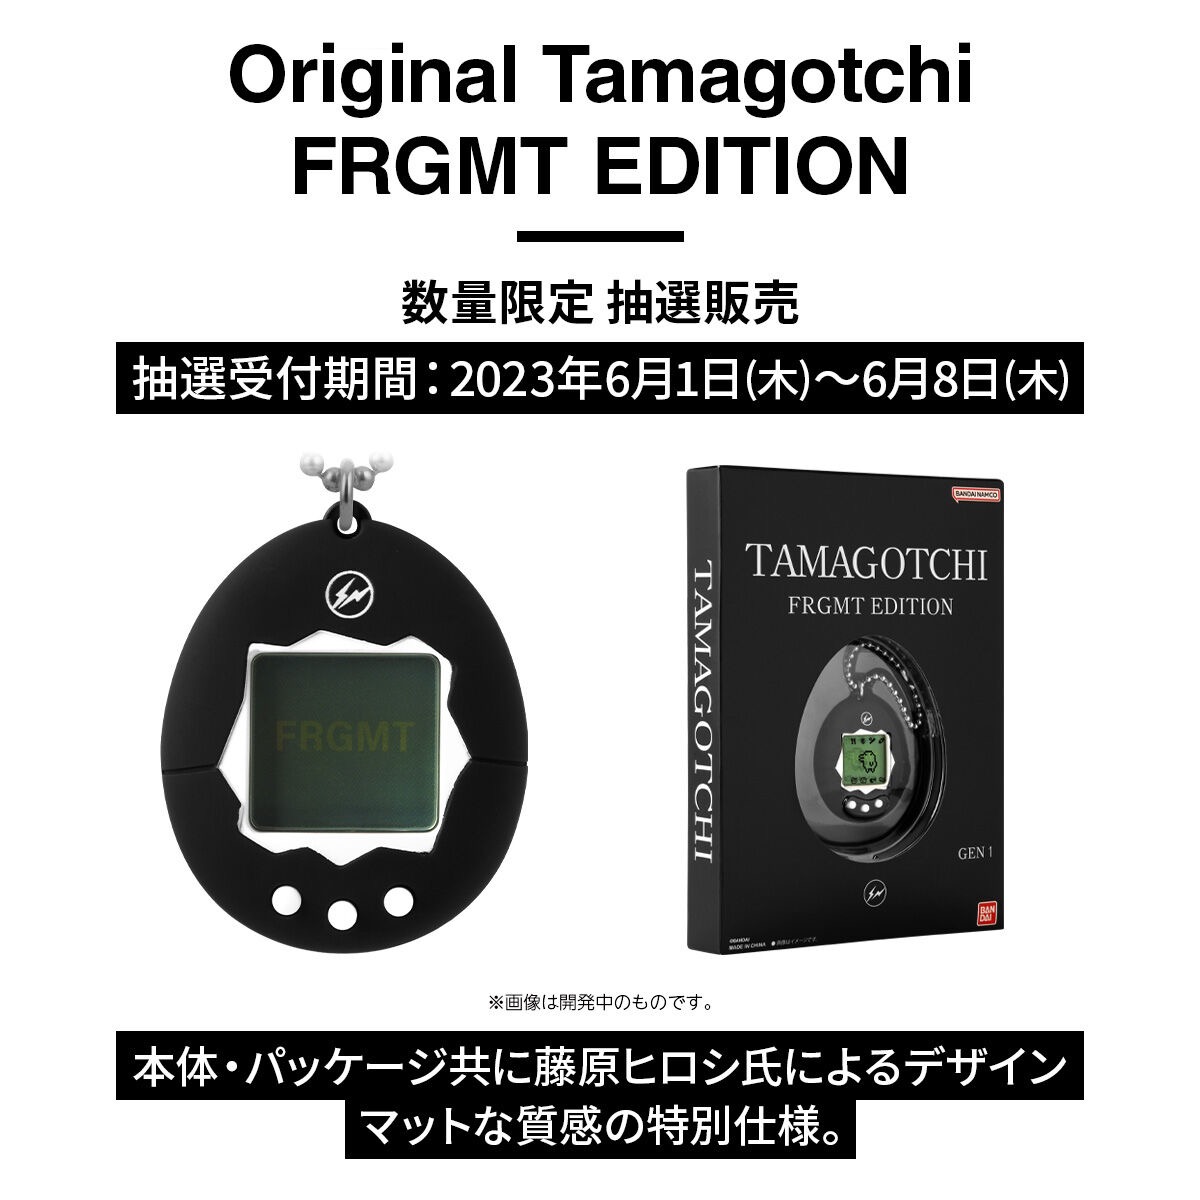 FRAGMENT × たまごっち 《Original Tamagotchi FRGMT  EDITION》のWEB抽選販売が国内6月1日〜6月8日の期間で受付 UP TO DATE